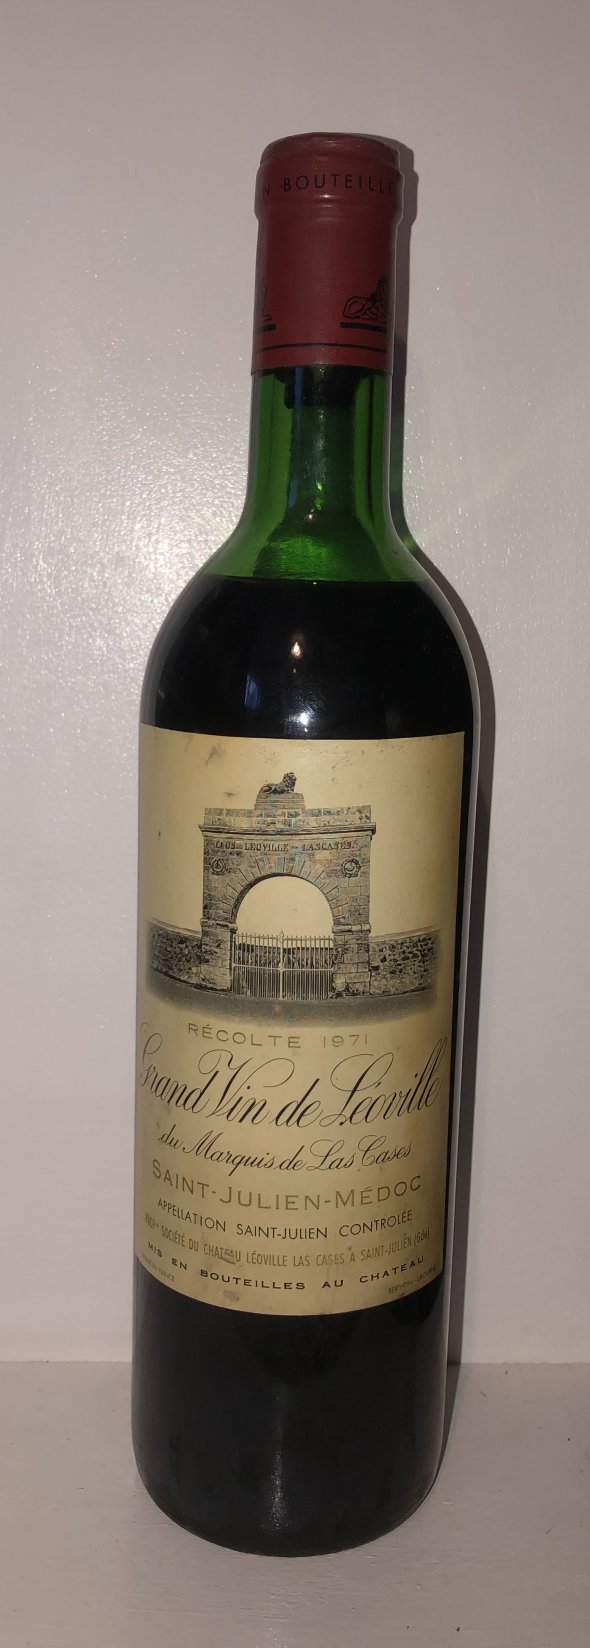 Grand vin de leoville 1971 